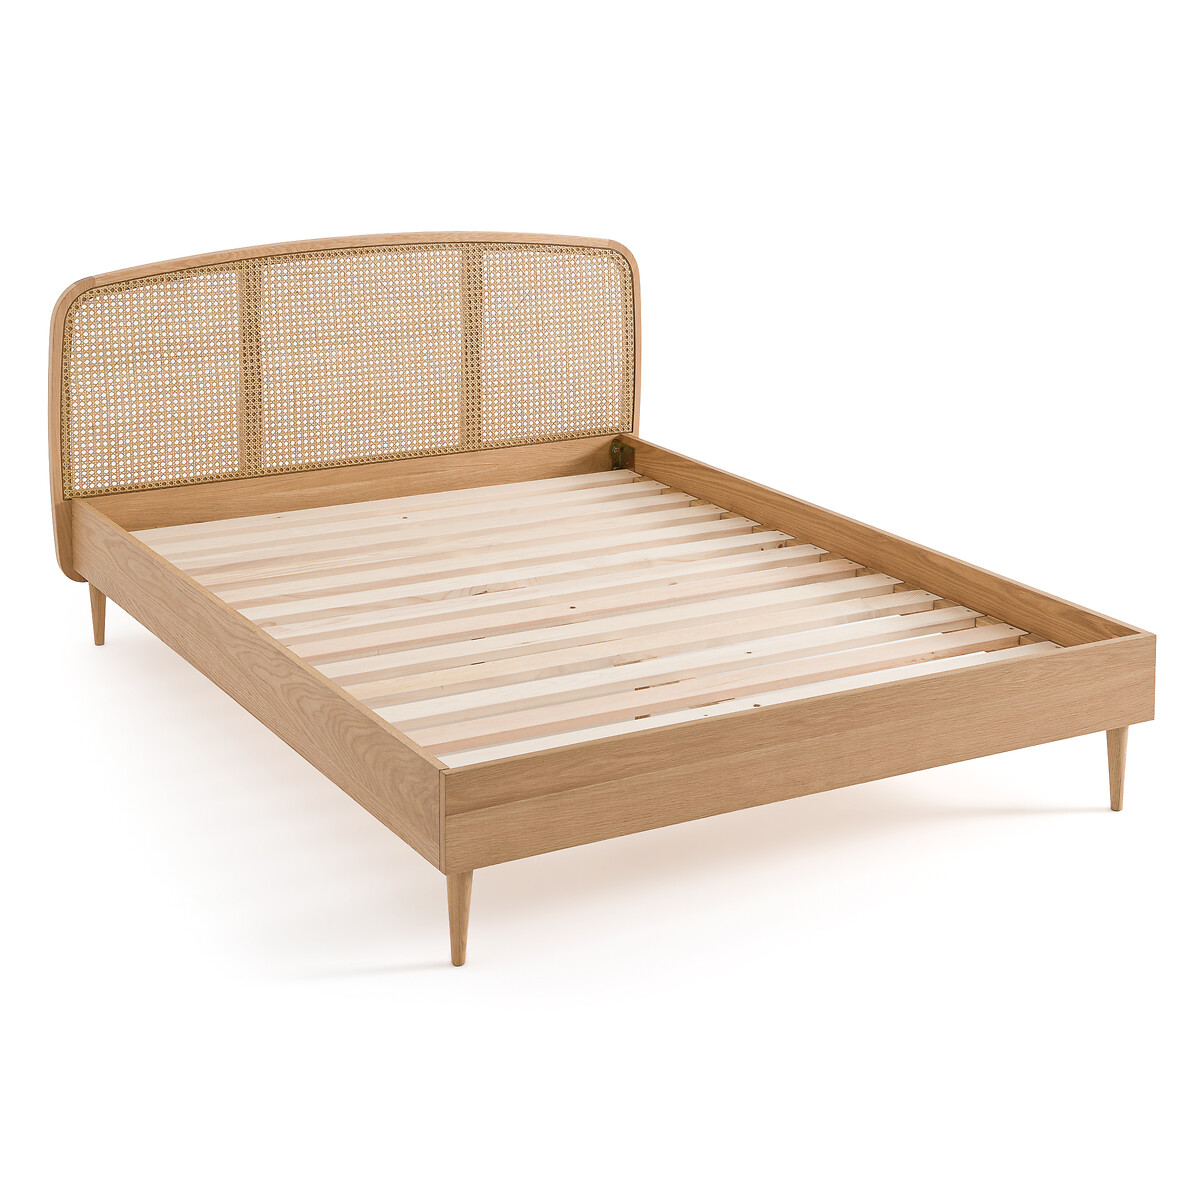 Кровать из дуба и плетеного материала с реечным кроватным основанием Buisseau  140 x 190 см каштановый LaRedoute, размер 140 x 190 см - фото 3